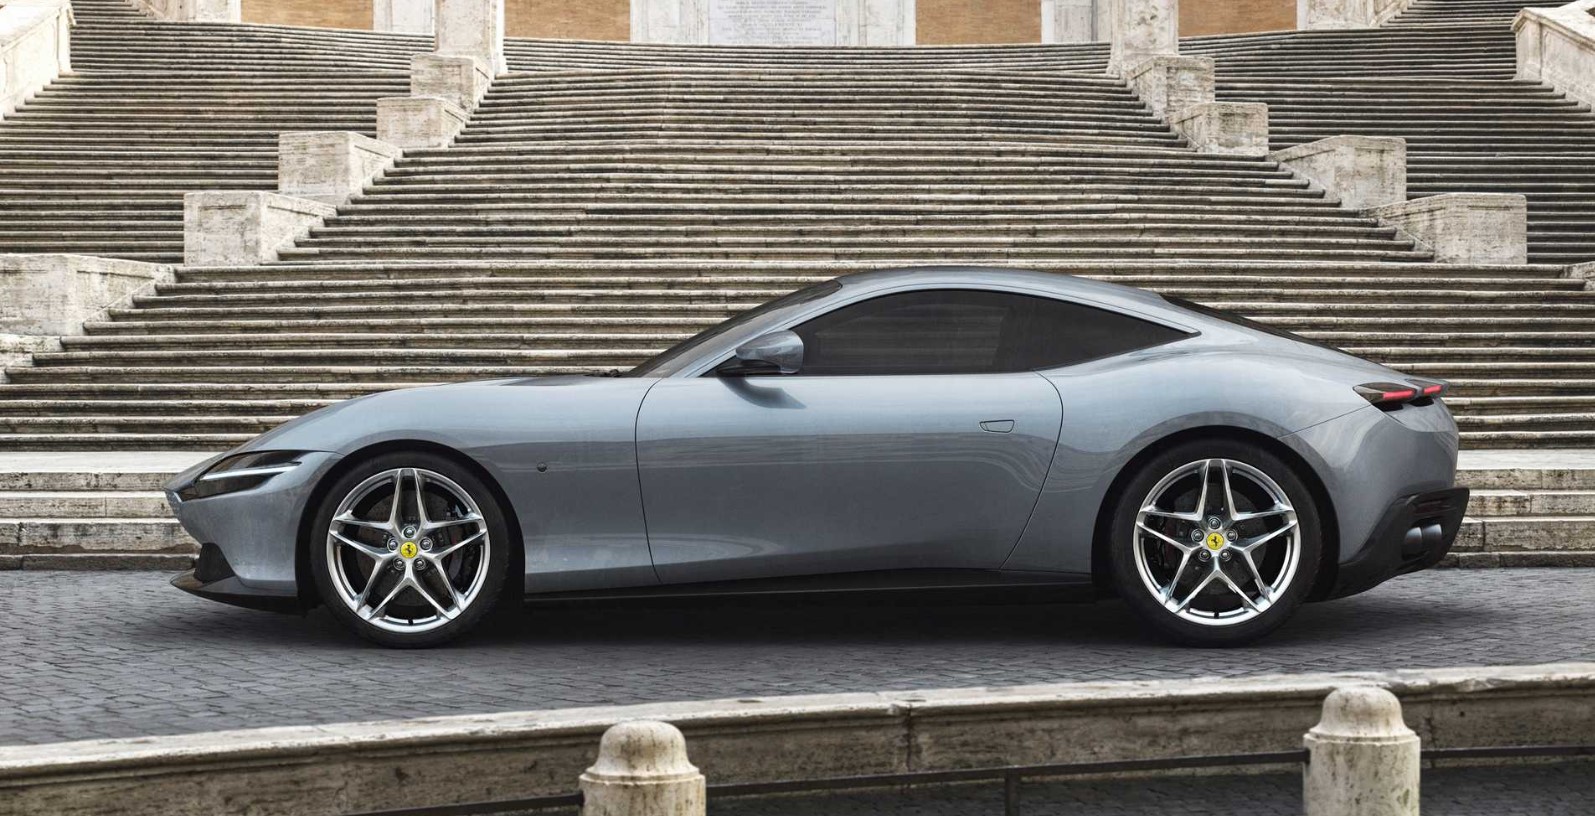 Ferrari thu hồi hơn 23.000 ô tô vì nguy cơ hỏng phanh - Hình 1